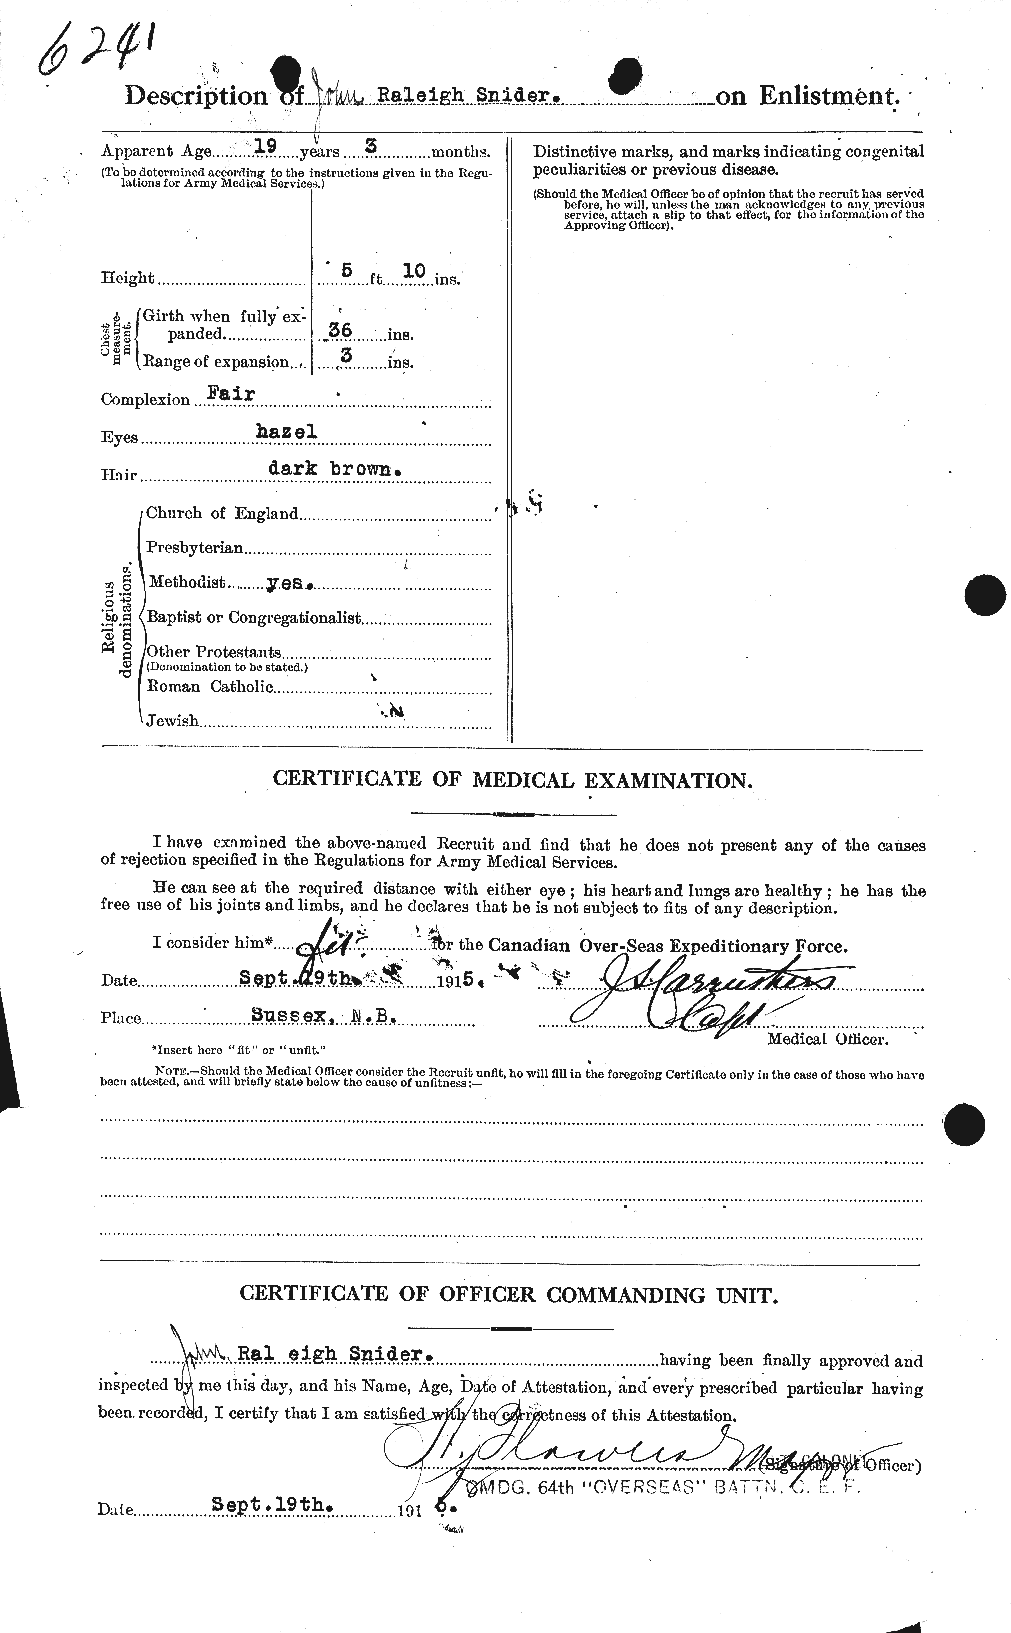 Dossiers du Personnel de la Première Guerre mondiale - CEC 110005b